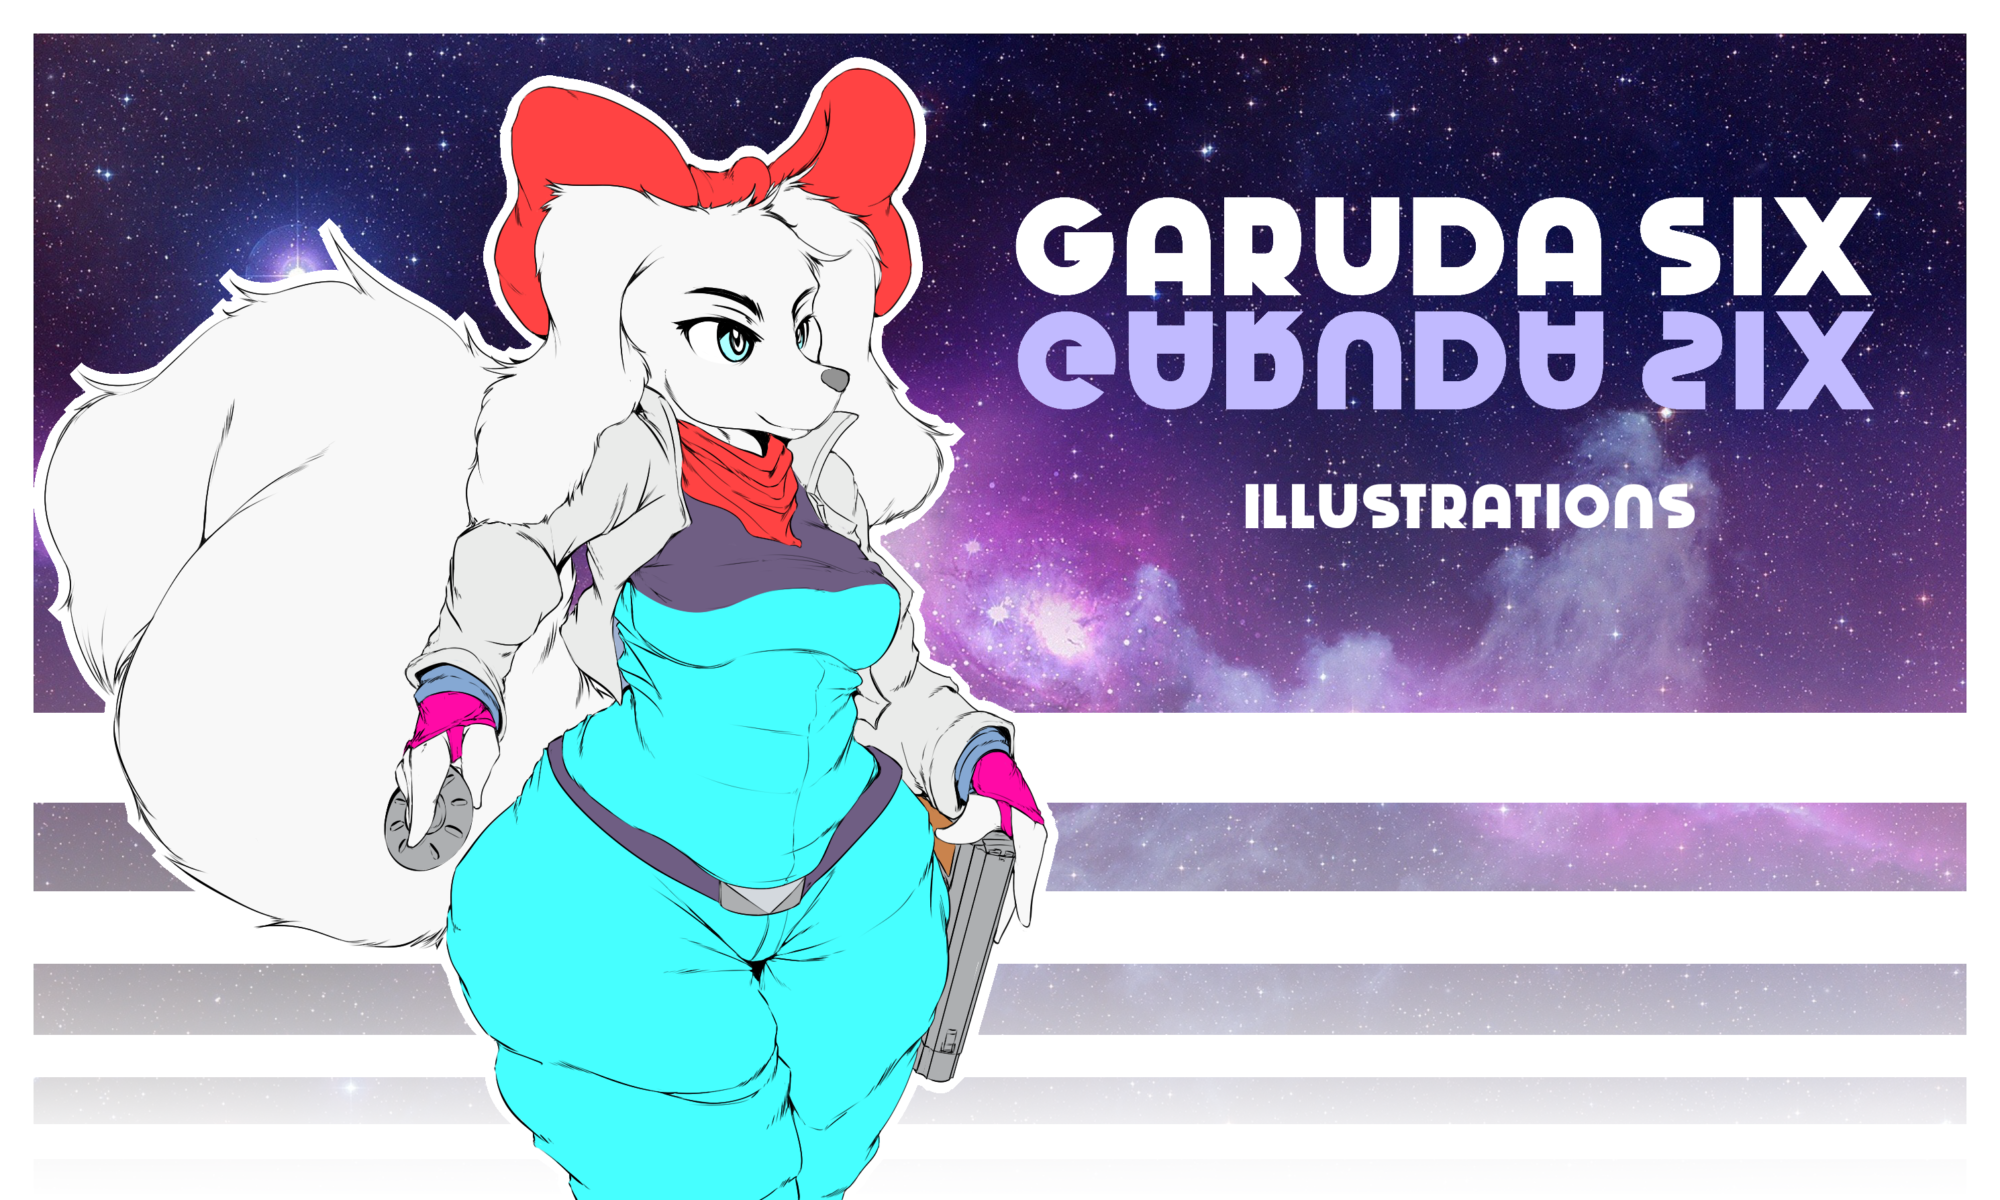 Garuda Six